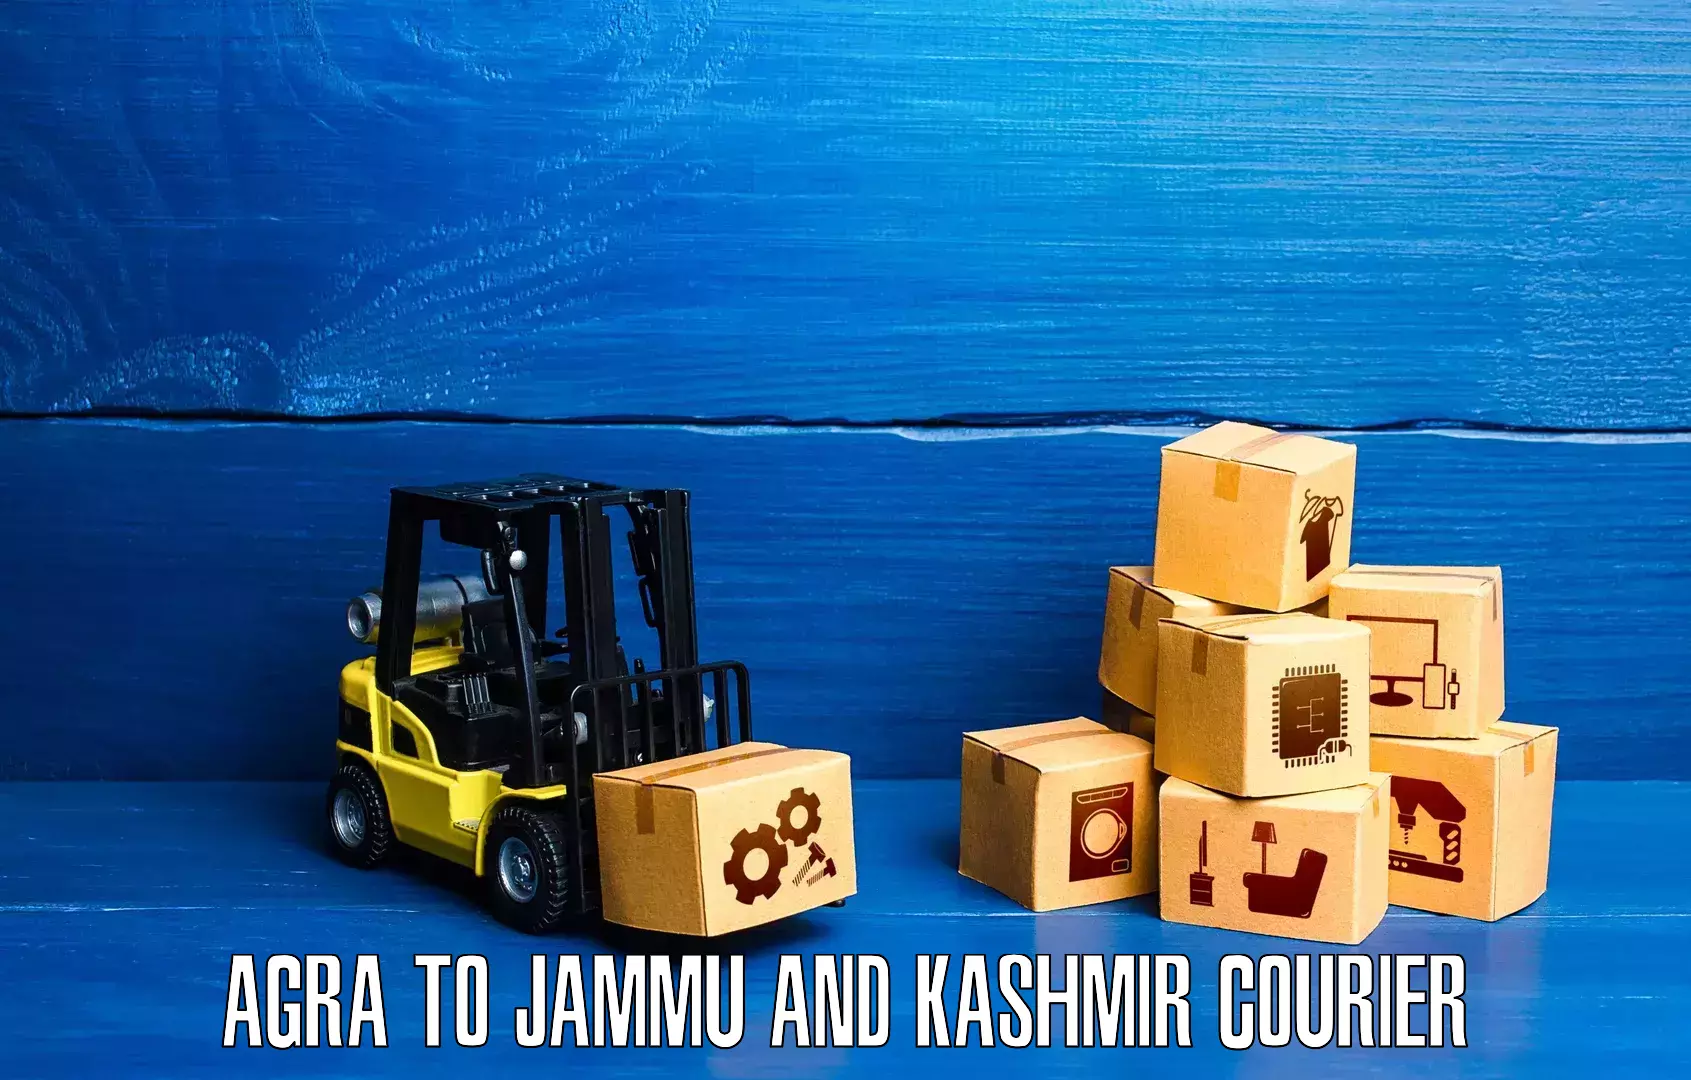 Flexible shipping options Agra to Rajouri